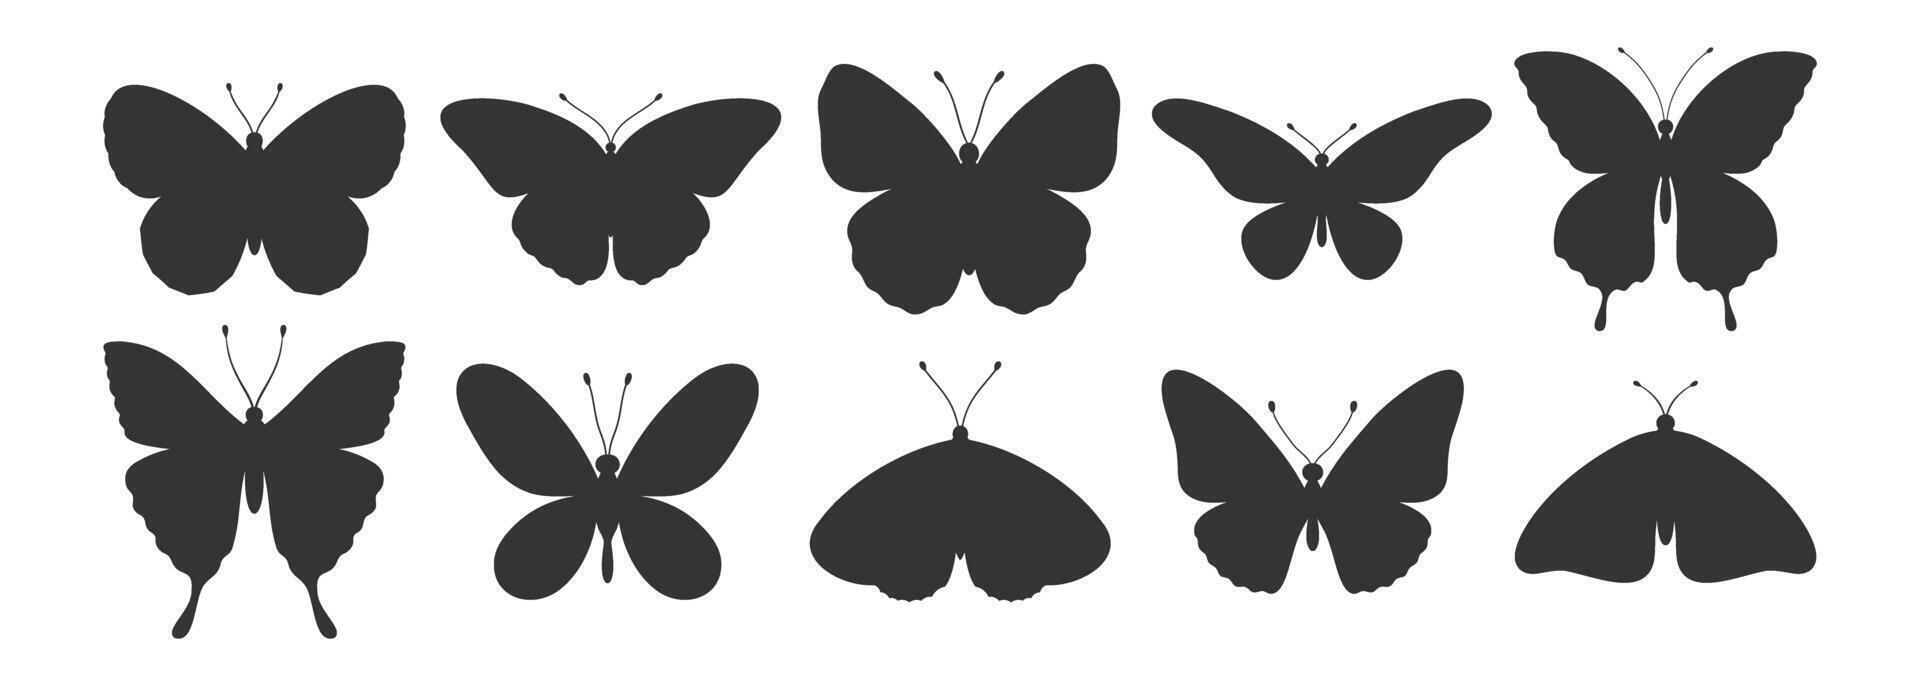 mariposa siluetas colocar. sencillo negro formas de alas mariposas y polillas, tatuajes vector ilustración, insecto íconos